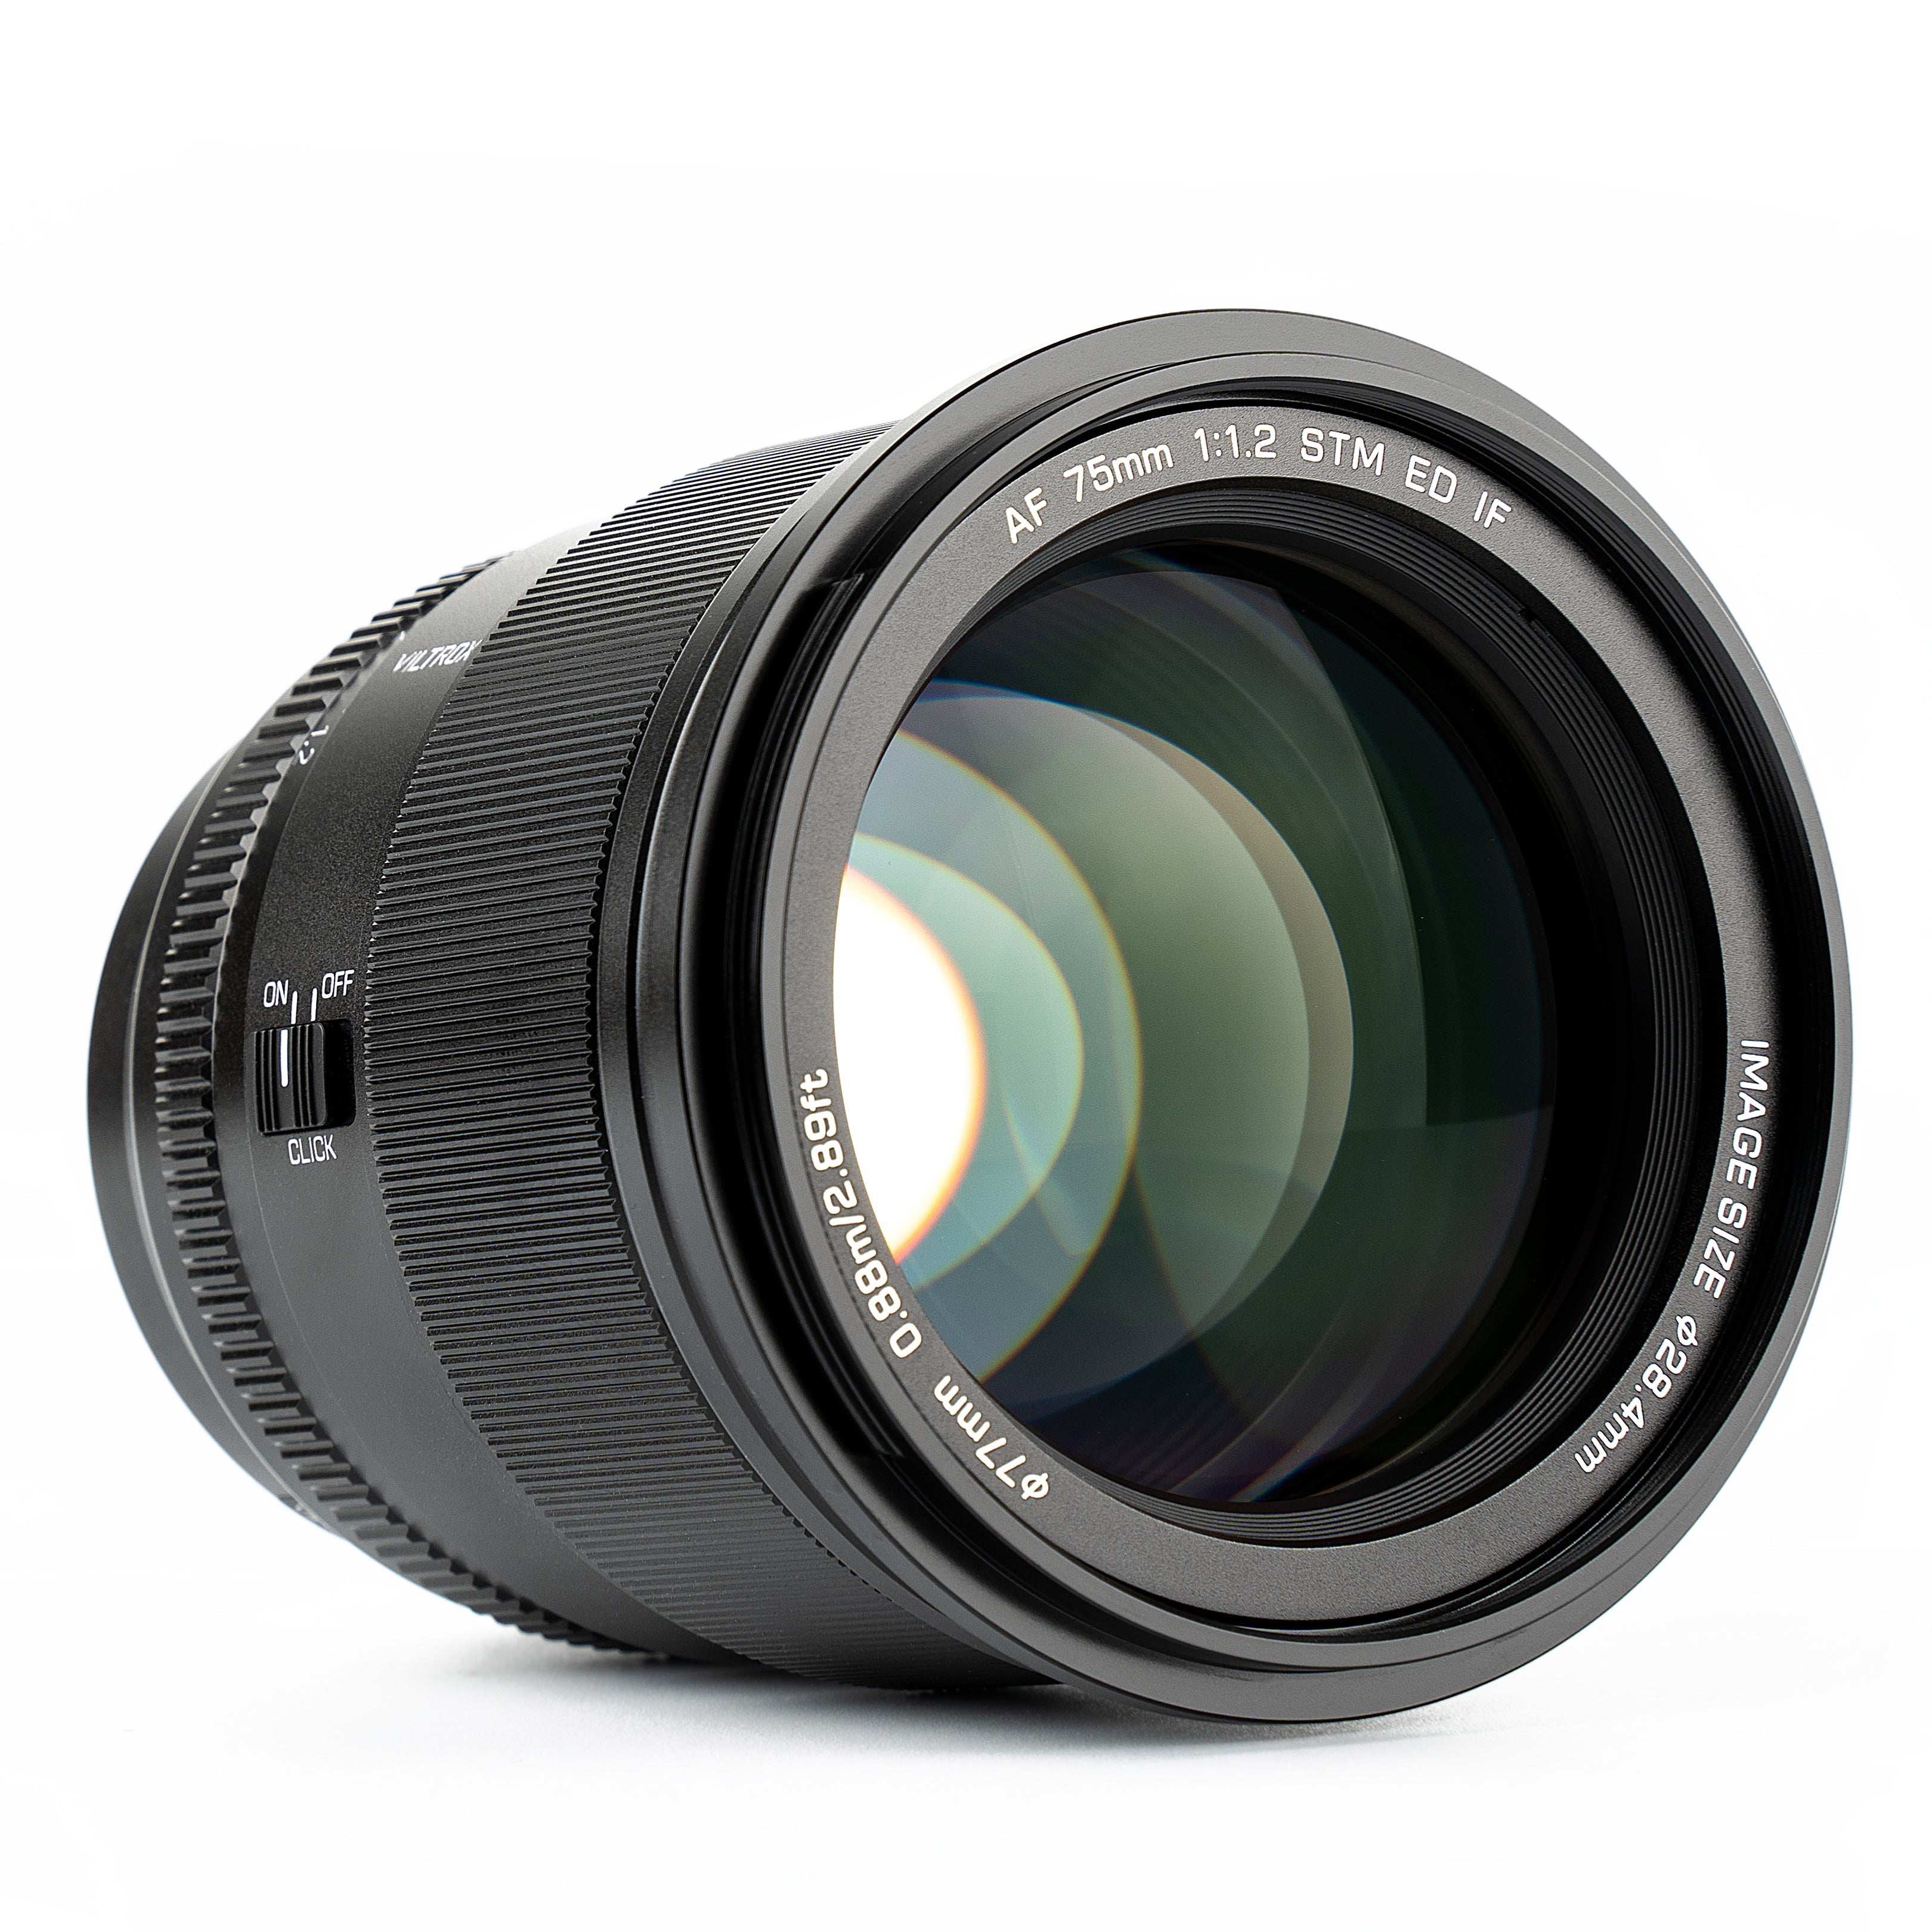 Viltrox AF 75mm F1.2 Pro APS-C Lens For Nikon Z-Mount